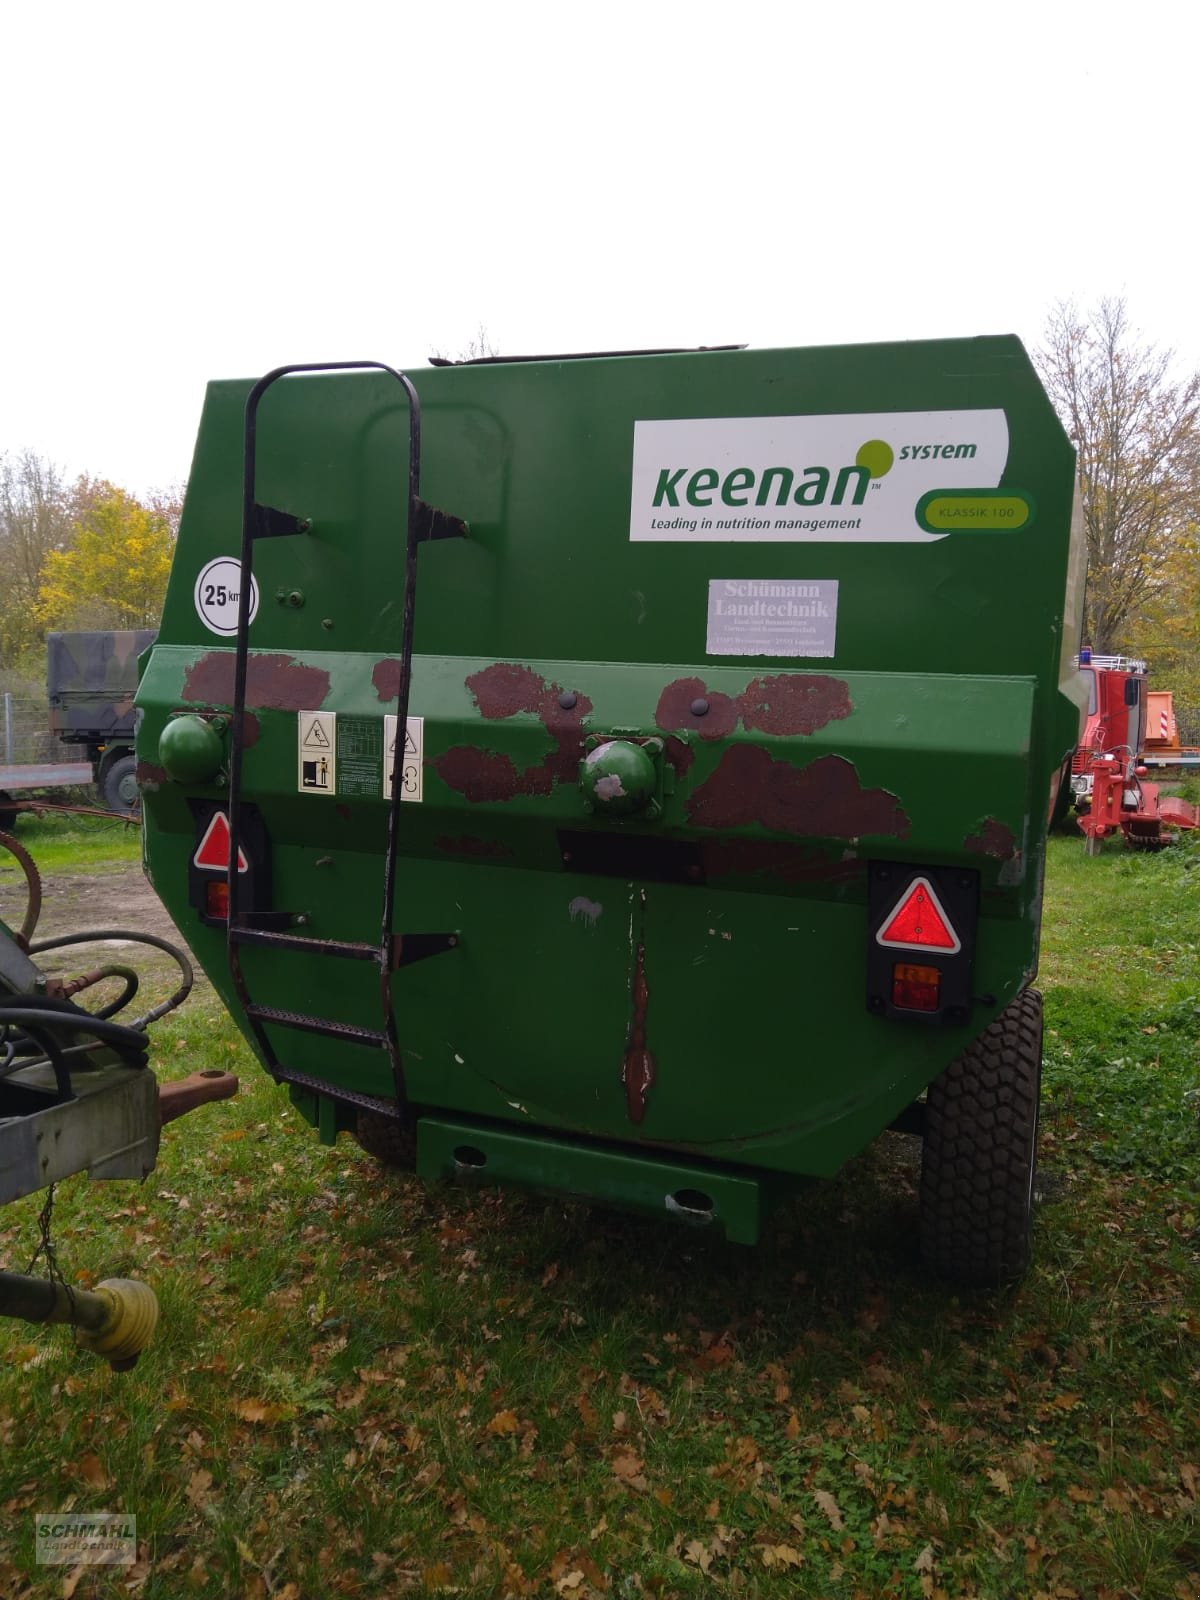 Futtermischwagen des Typs Keenan 100, Gebrauchtmaschine in Oldenburg in Holstein (Bild 5)